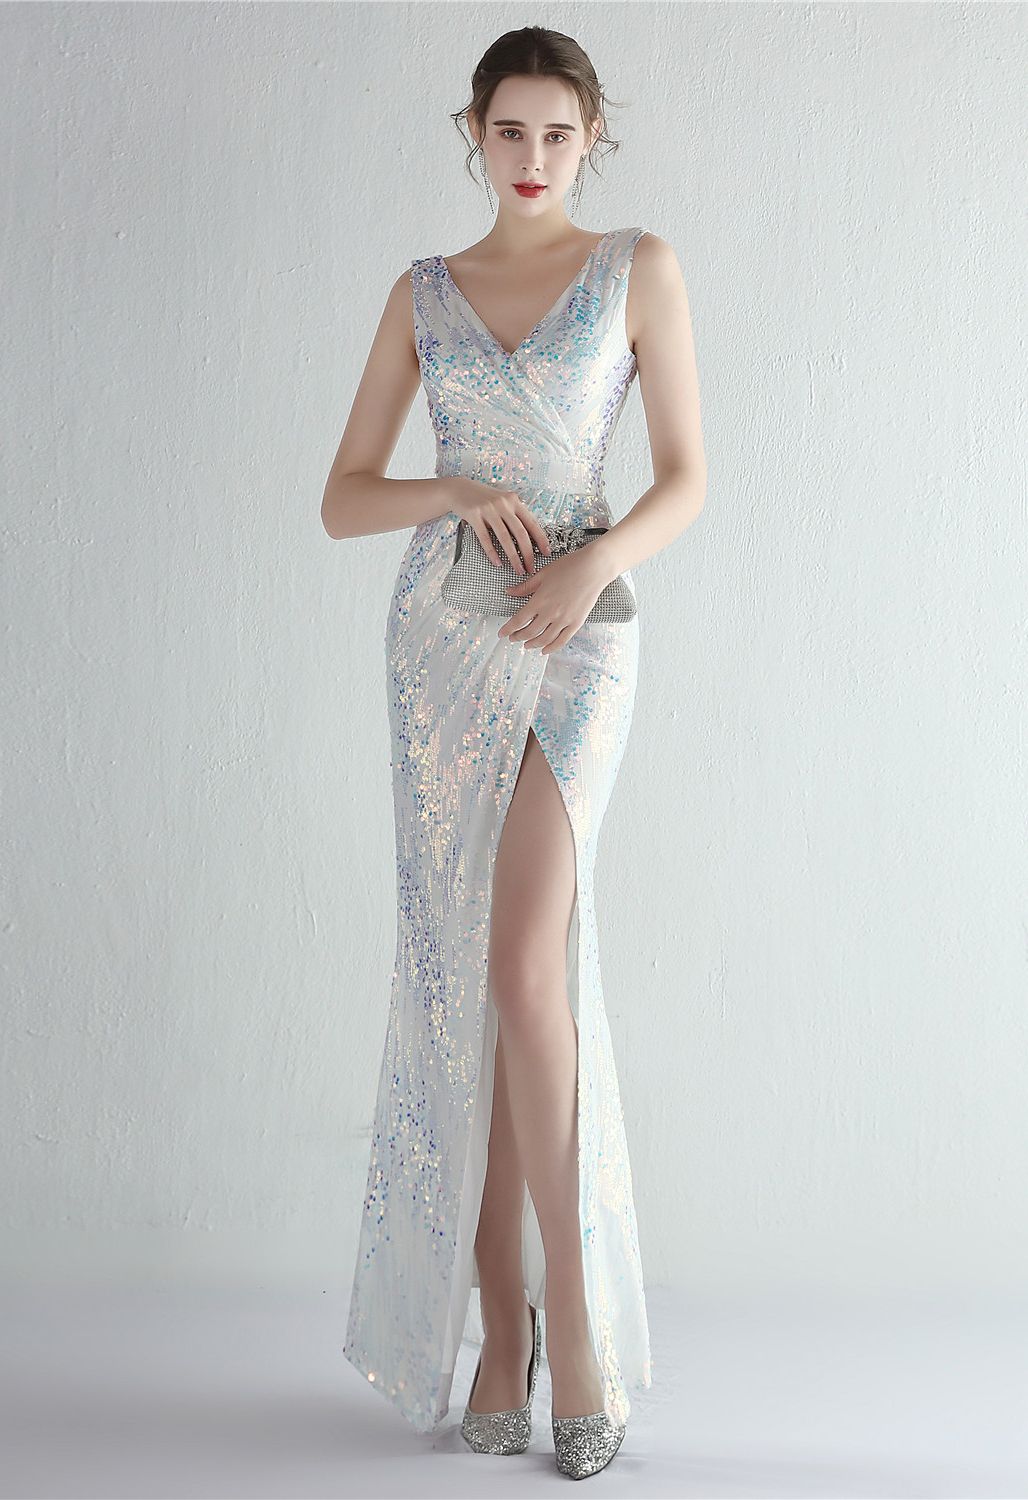 Mehrfarbiges Pailletten-Kleid mit V-Ausschnitt und hohem Schlitz in Weiß